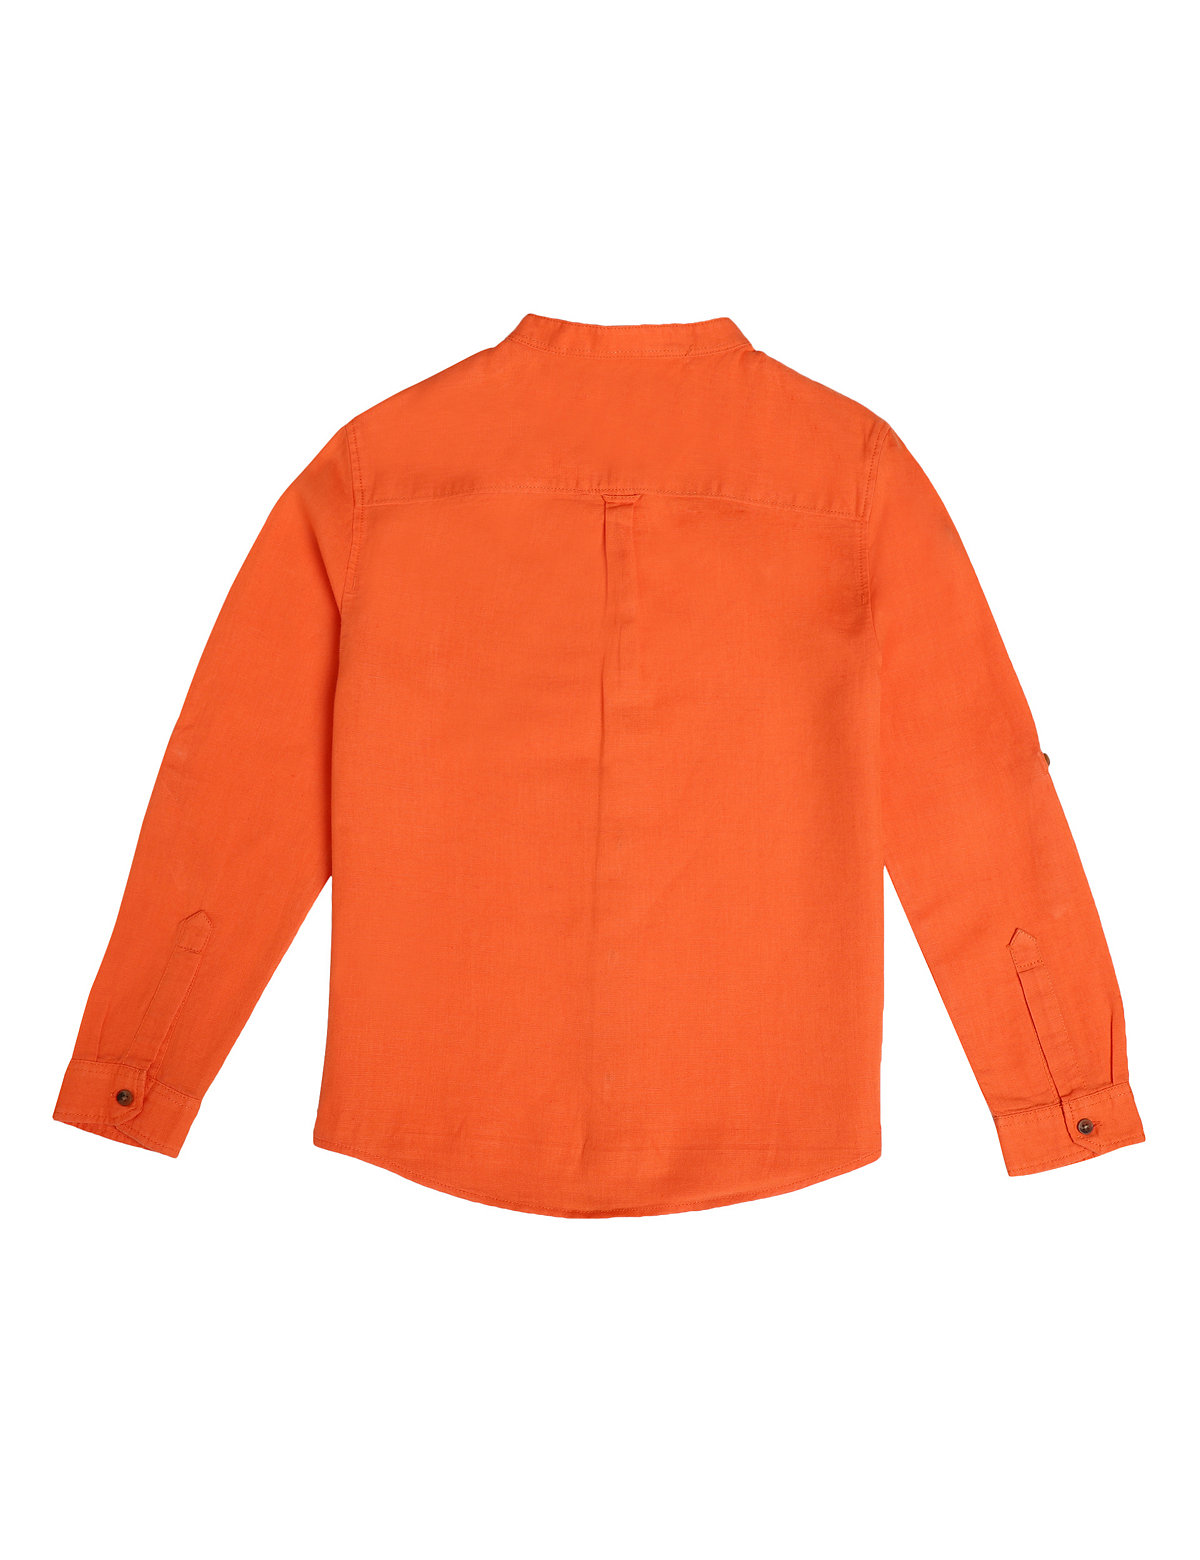 Linen Cotton Solid Mandarin Neck Shirt